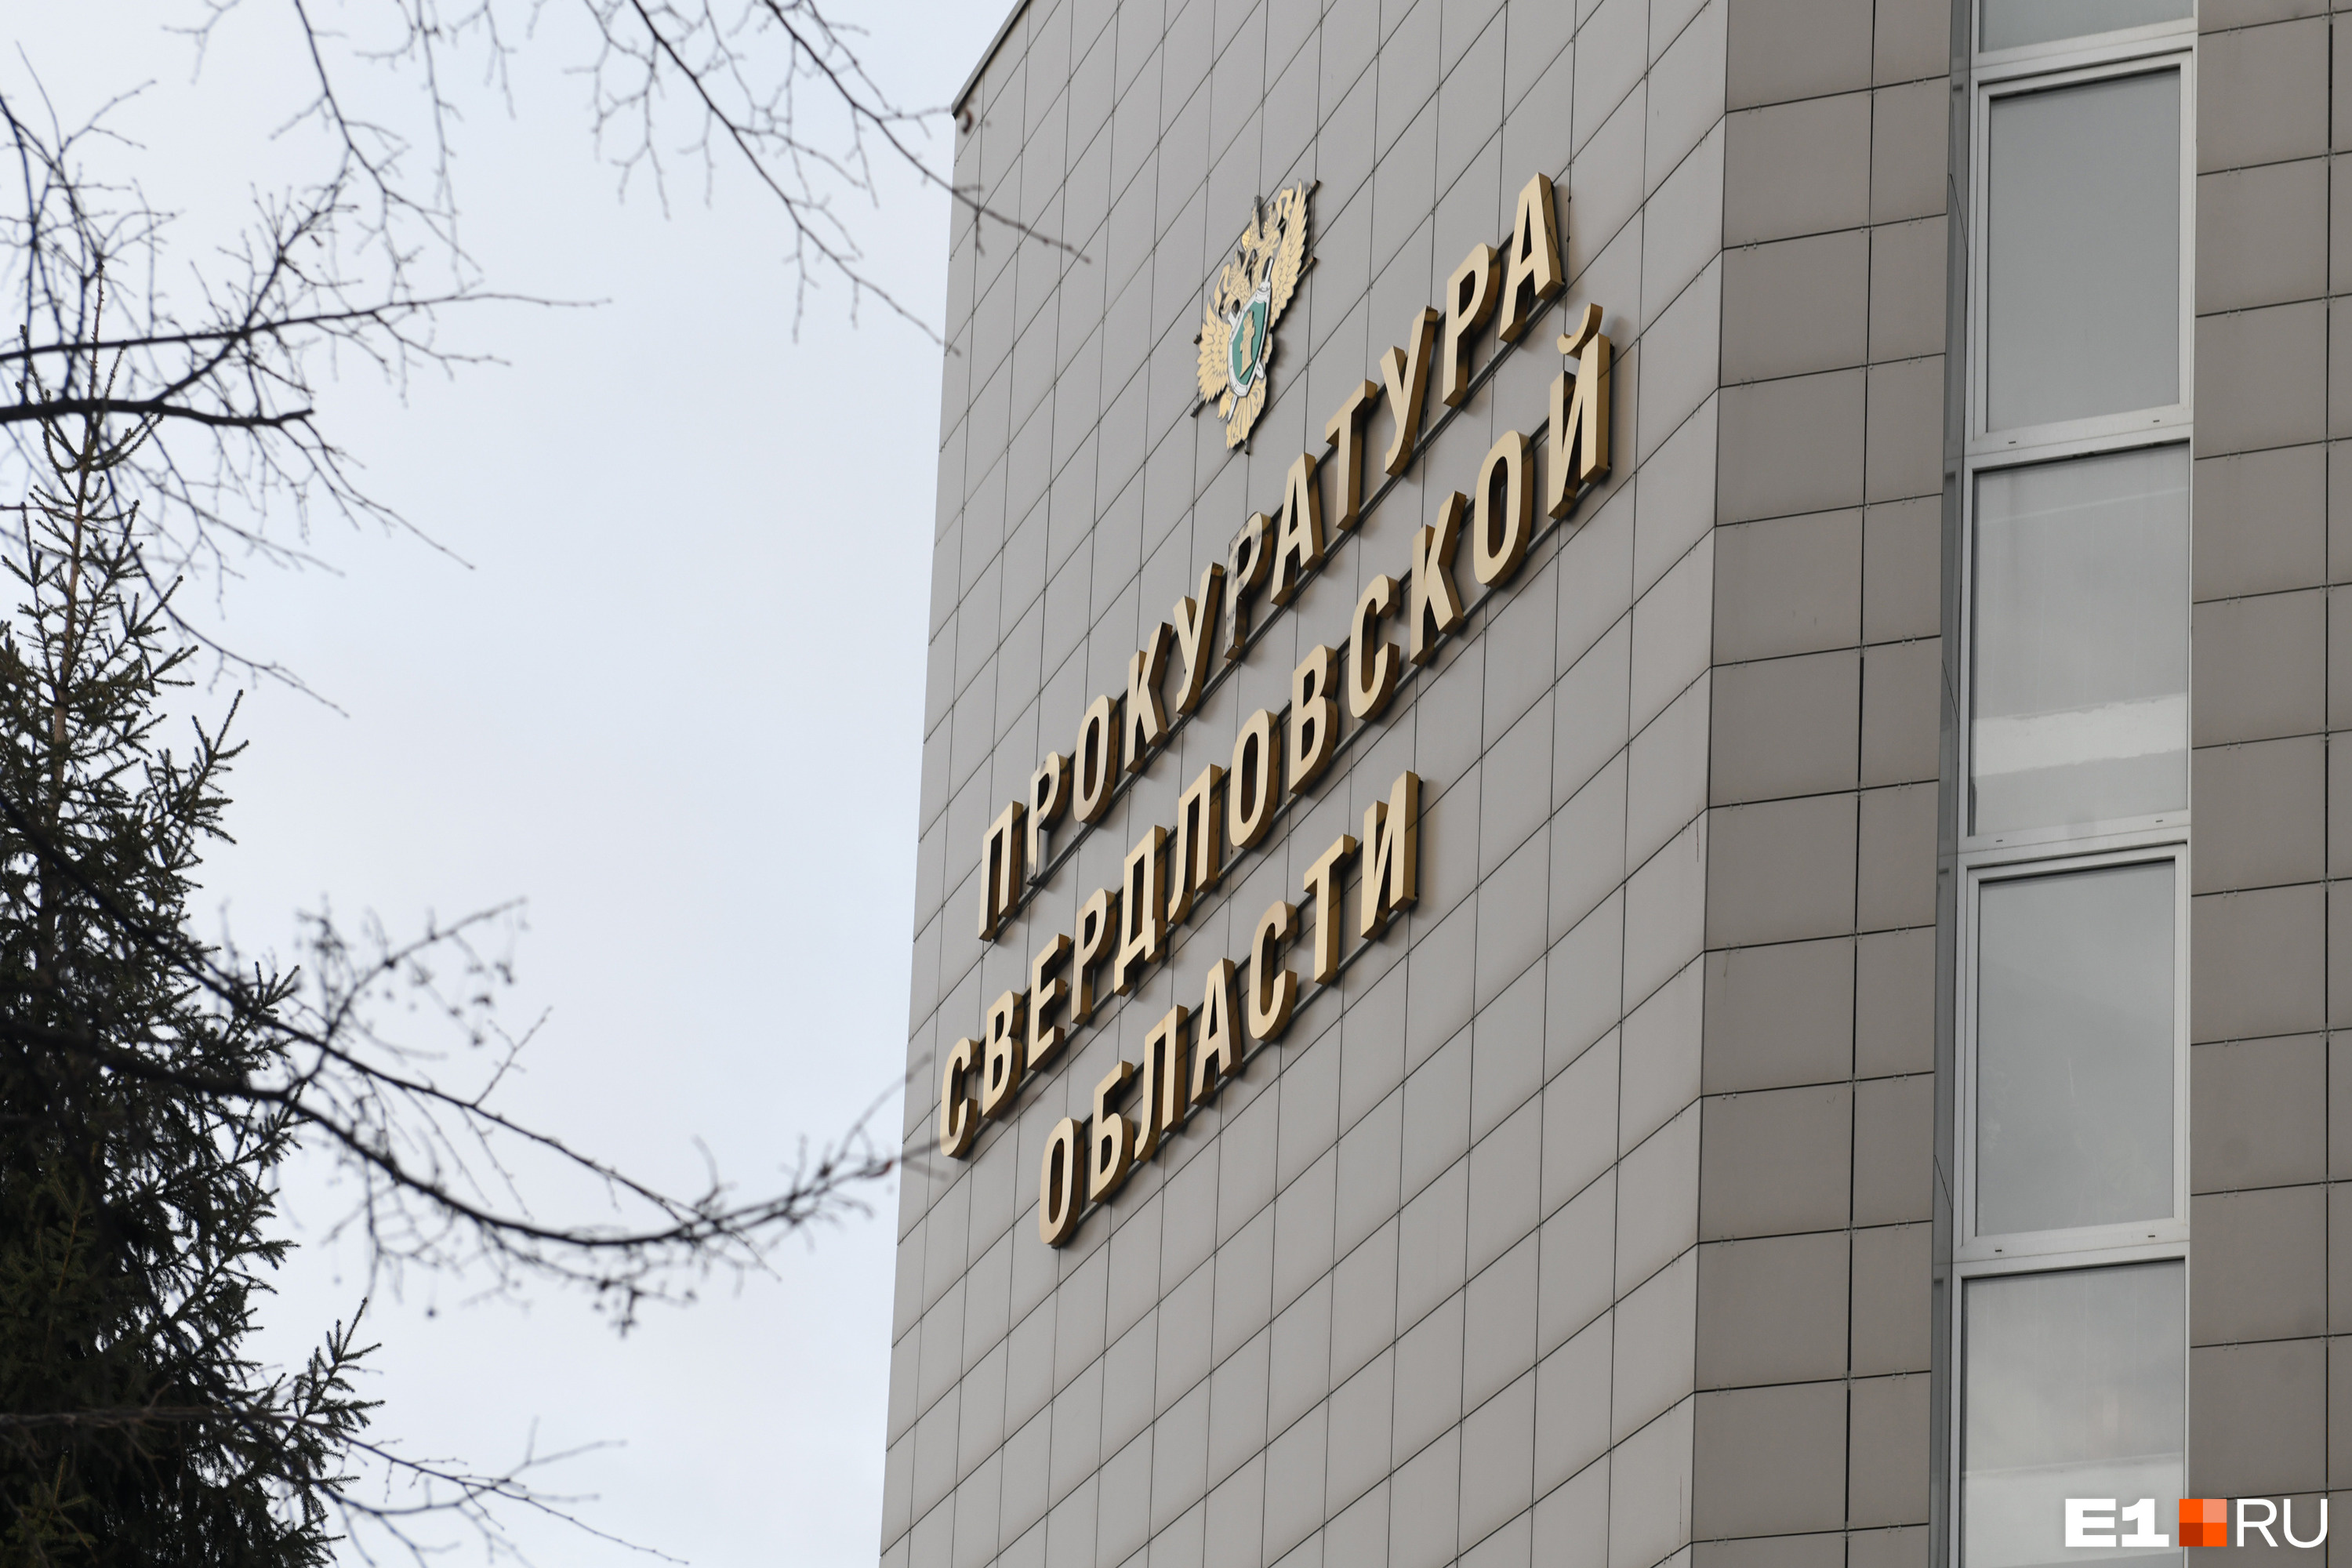 В Екатеринбург нагрянули с проверкой из Генпрокуратуры. Что они ищут?